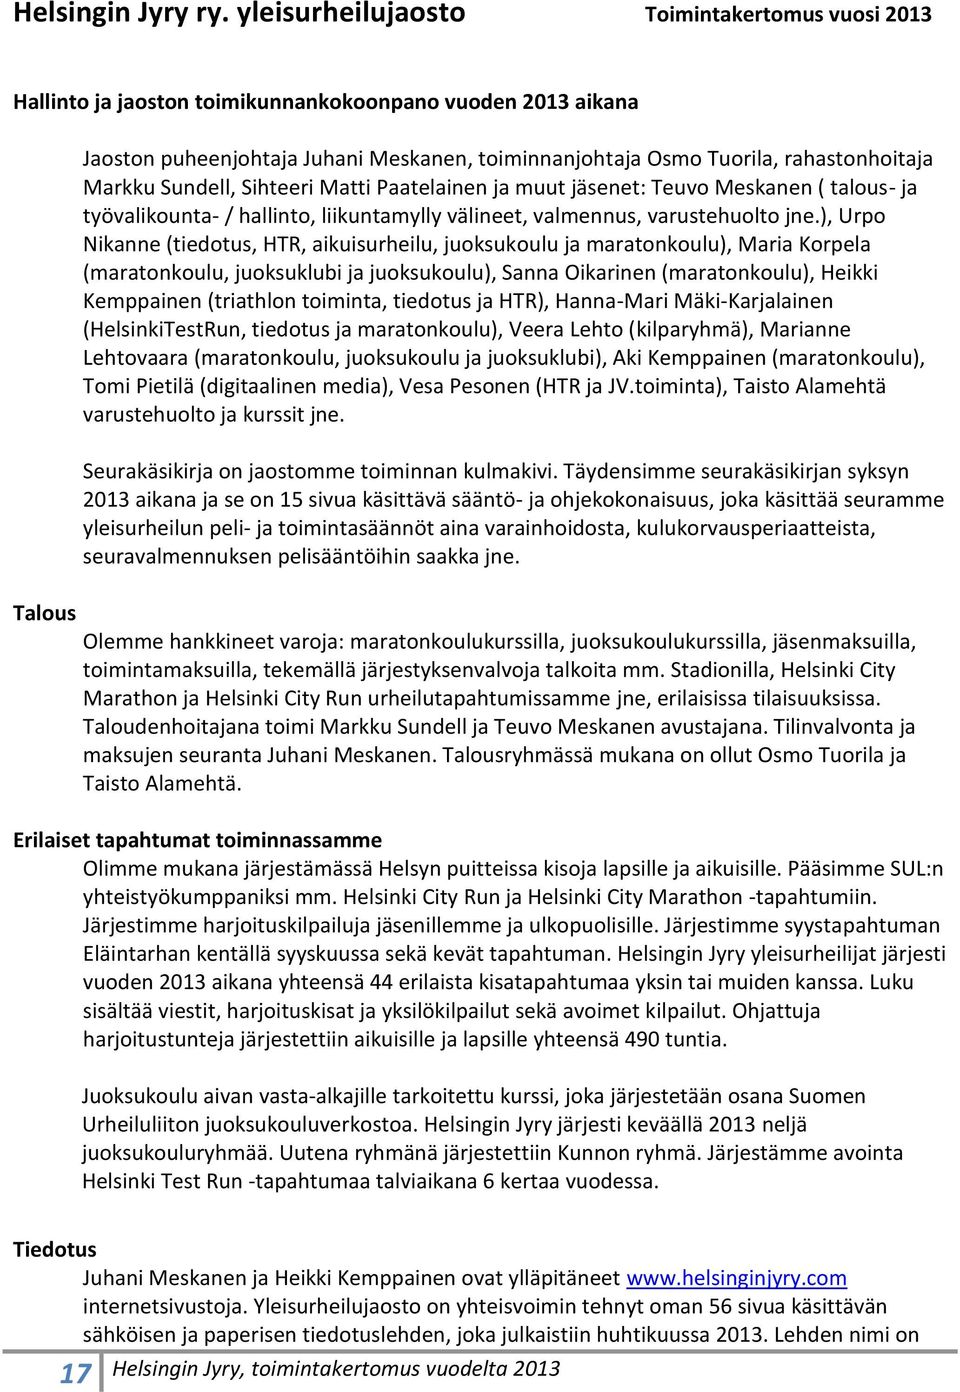 rahastonhoitaja Markku Sundell, Sihteeri Matti Paatelainen ja muut jäsenet: Teuvo Meskanen ( talous- ja työvalikounta- / hallinto, liikuntamylly välineet, valmennus, varustehuolto jne.